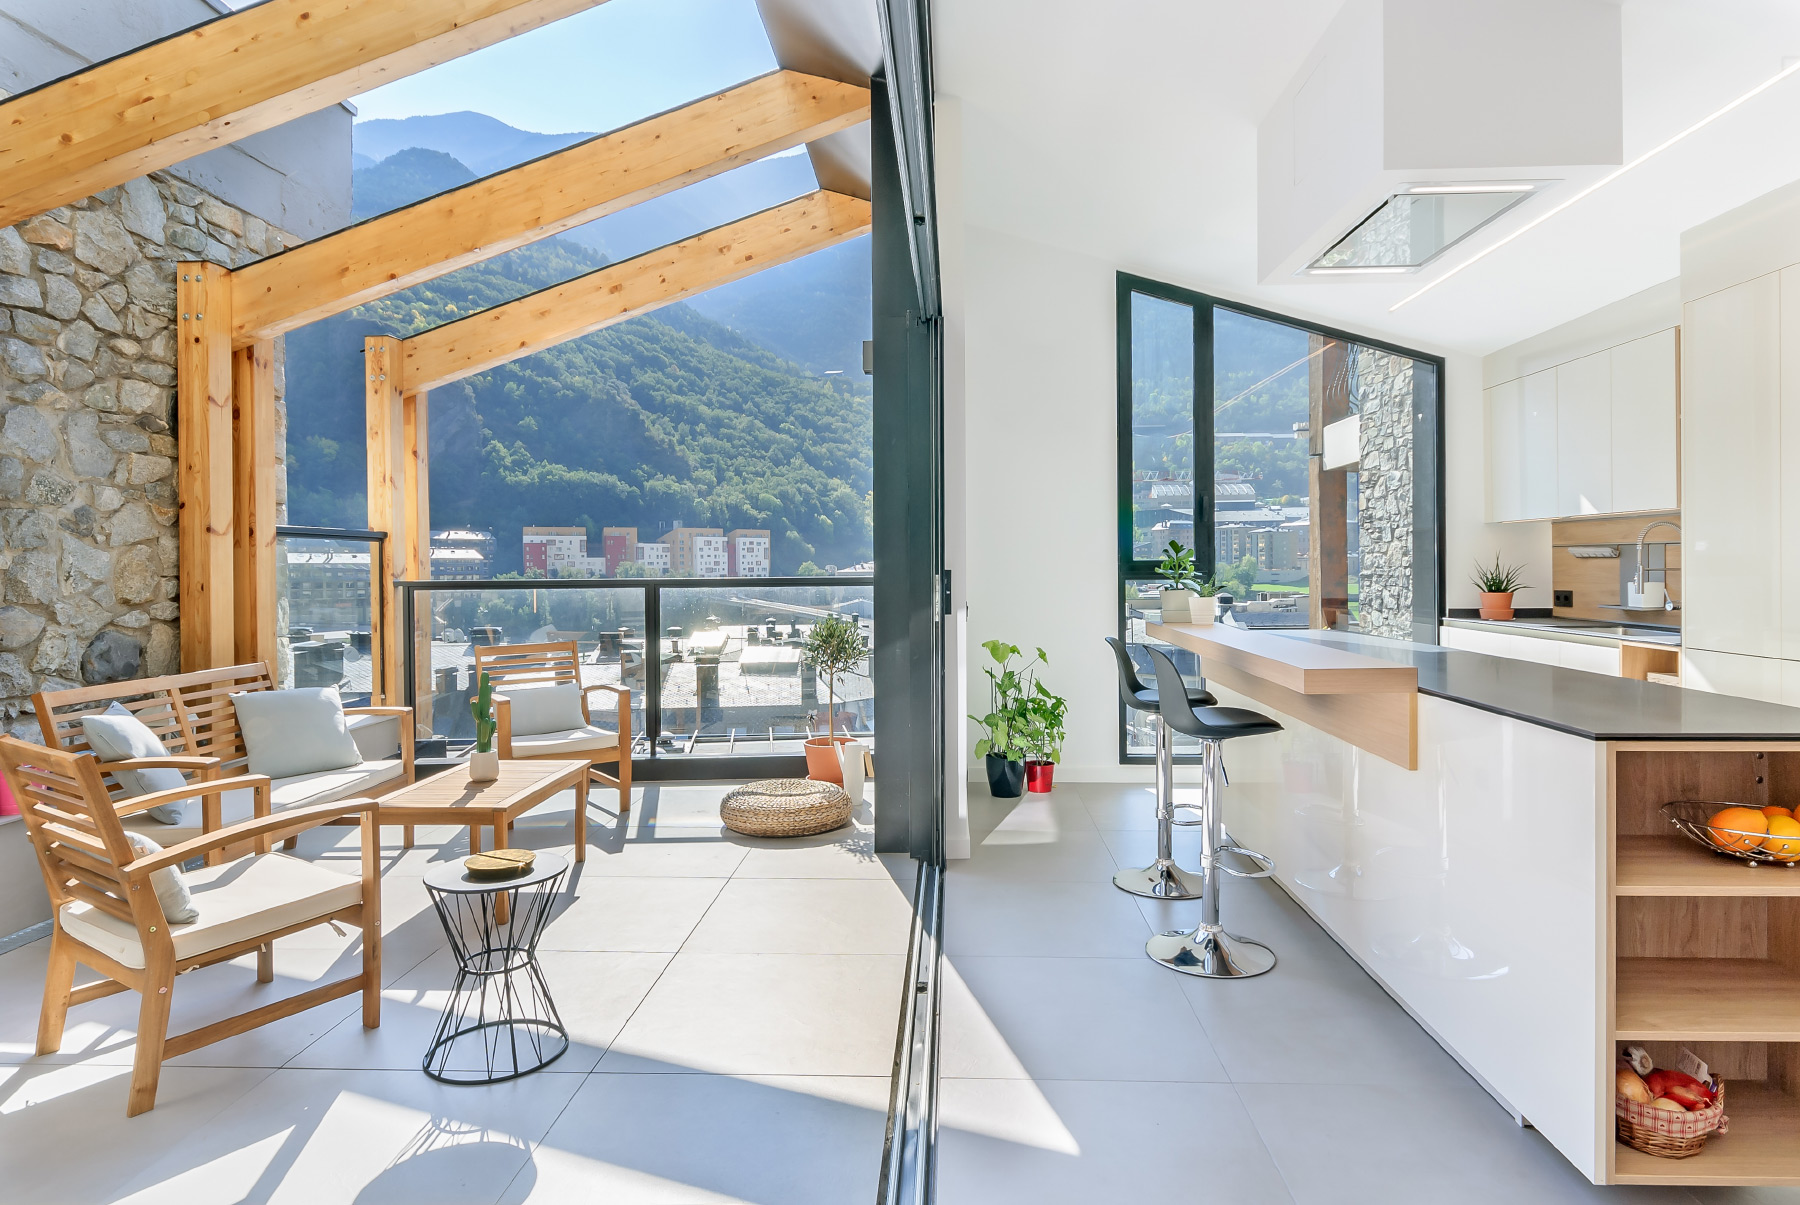 M31 estudi arquitectura interiorisme reformes vivendas Andorra